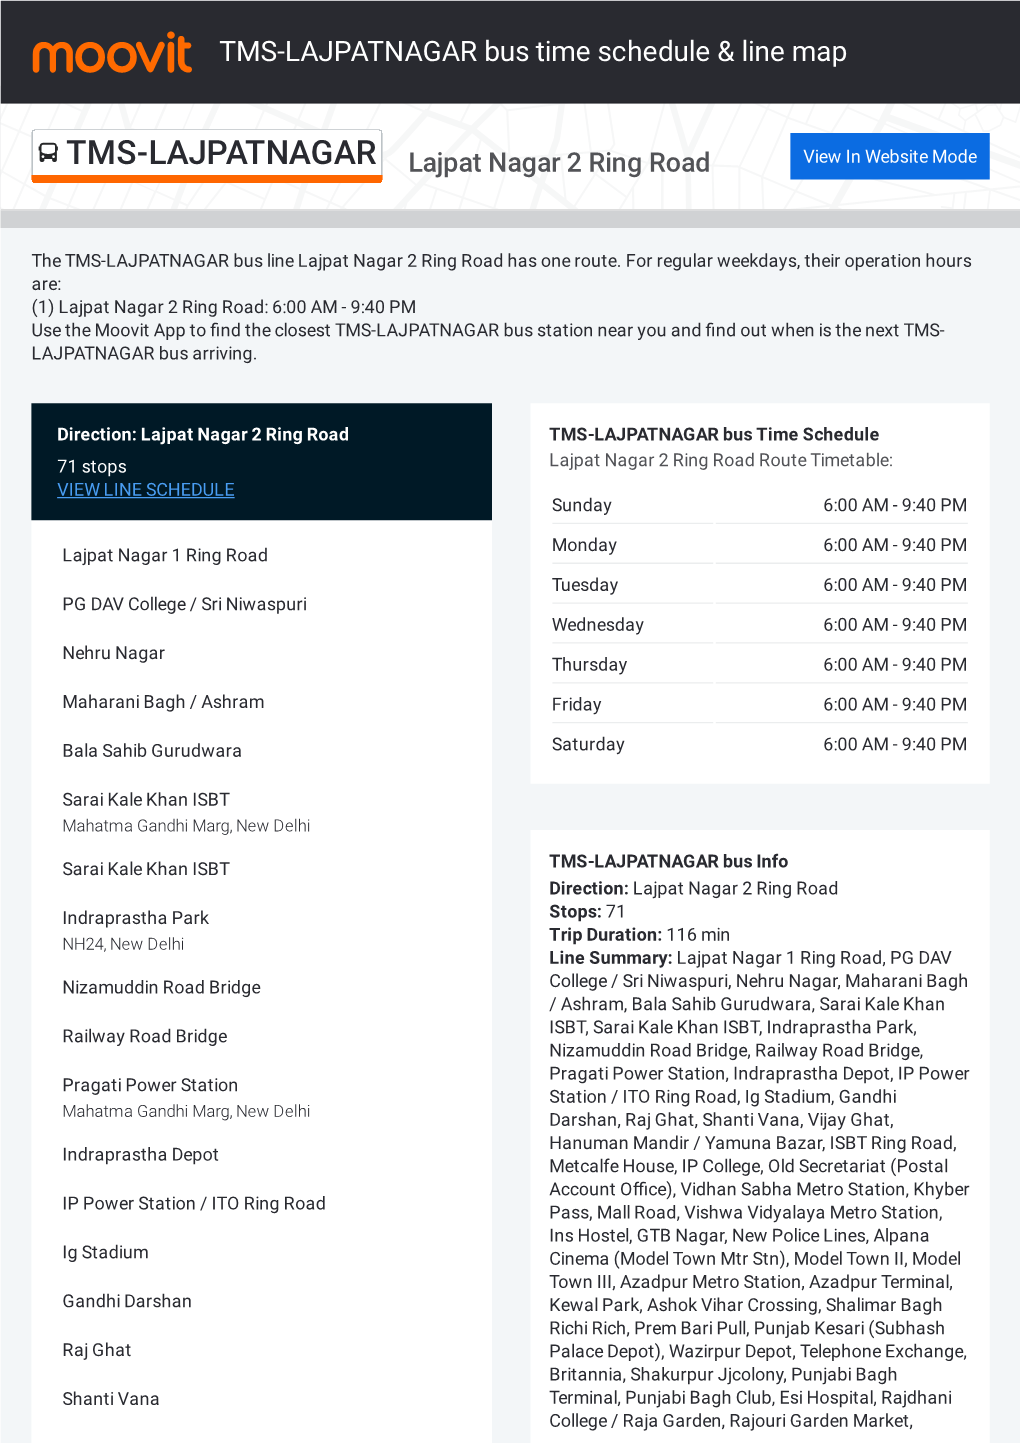 TMS-LAJPATNAGAR Bus Time Schedule & Line Route